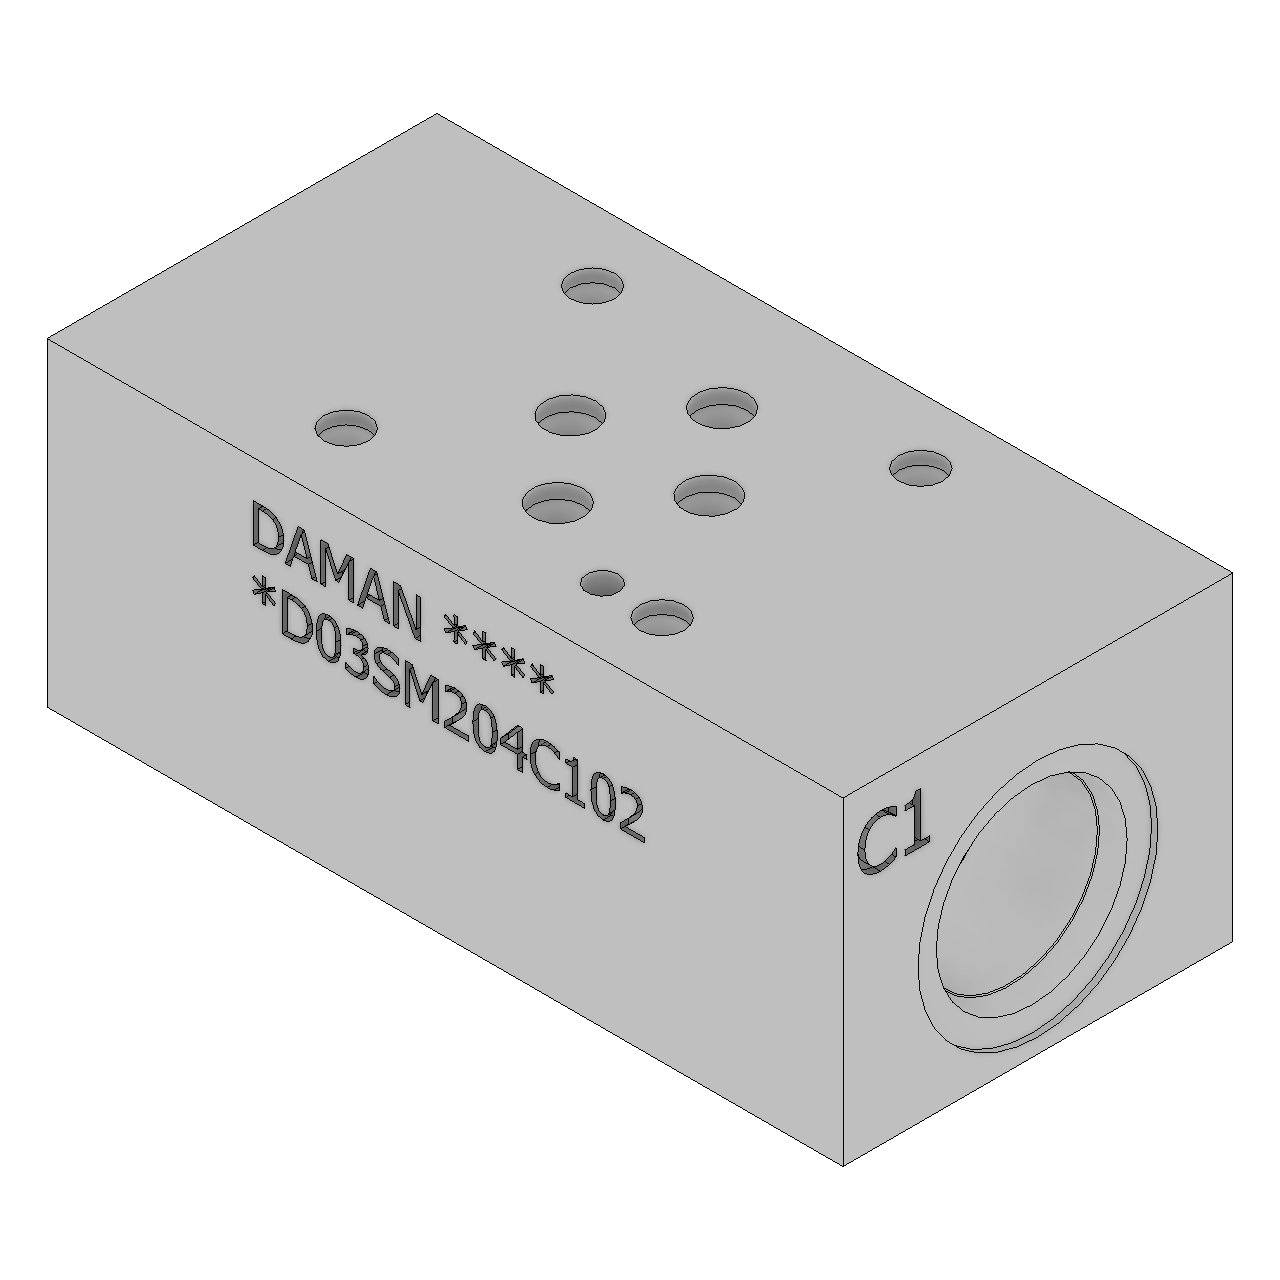 DD03SM204C102 - Sandwich Modules